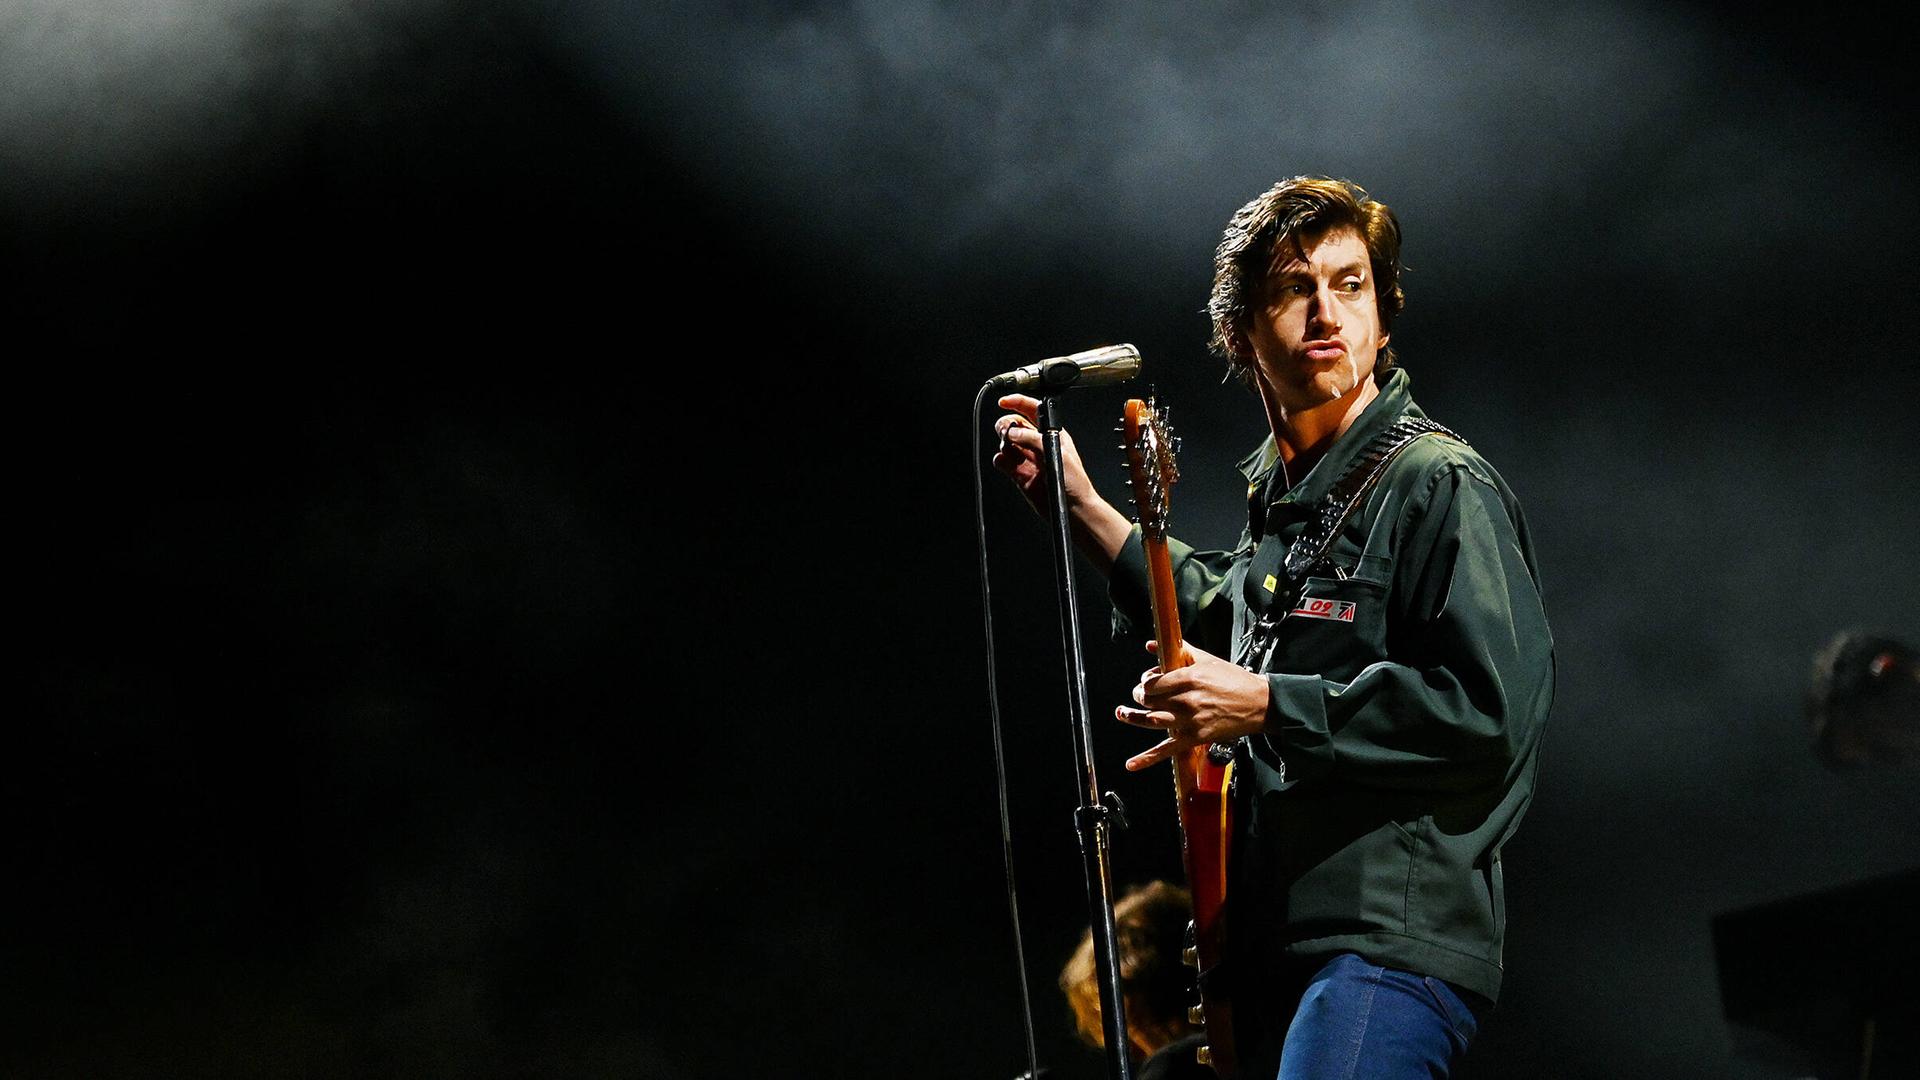 Arctic-Monkeys-Sänger Alex Turner posiert auf der Bühne mit Gitarre und Mikrofon.